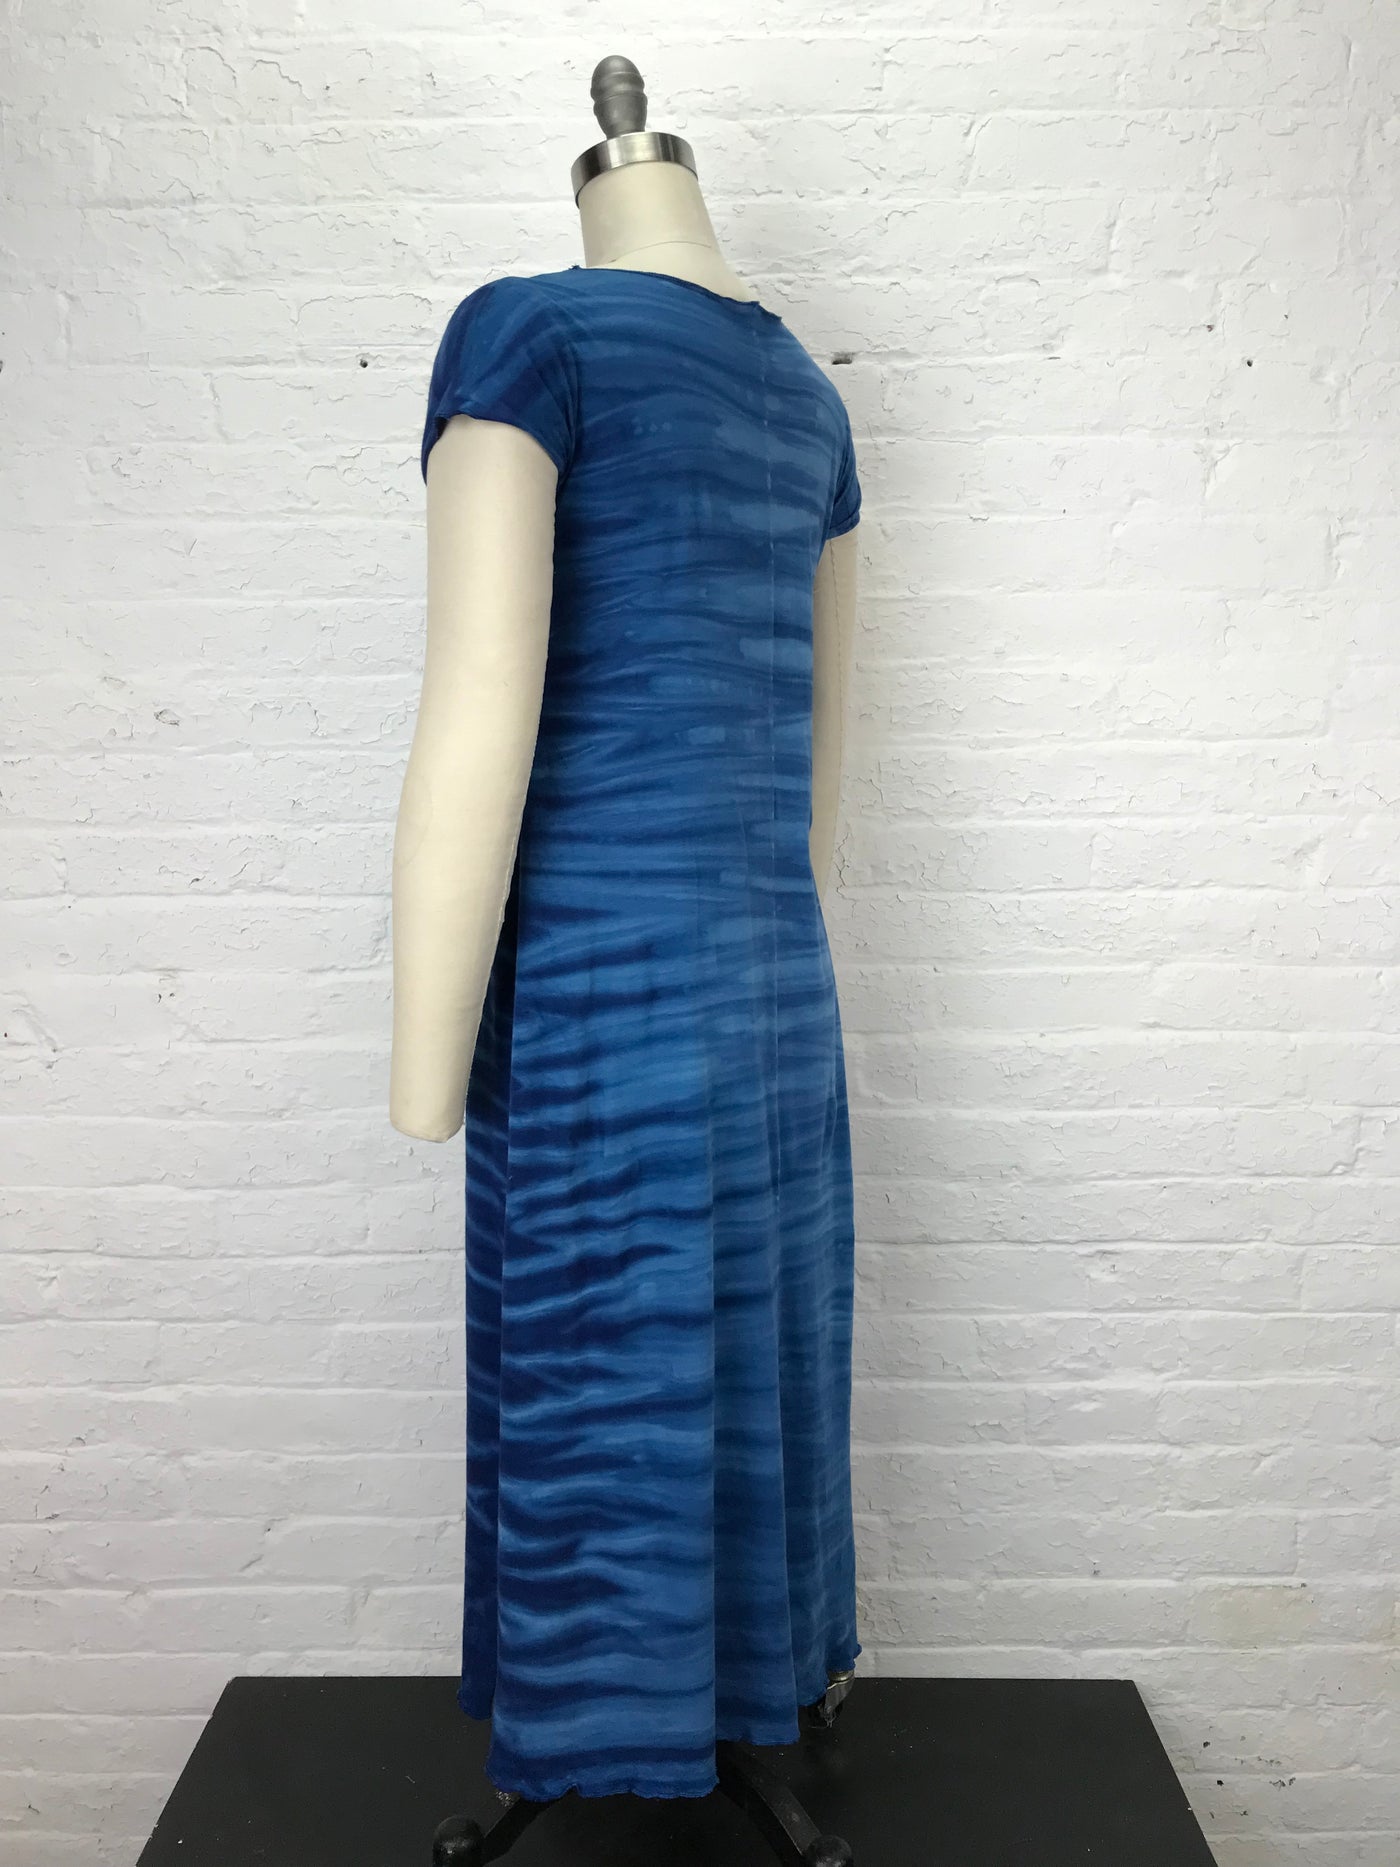 Catherine Midi Dress in Blue Sky Strata - Medium